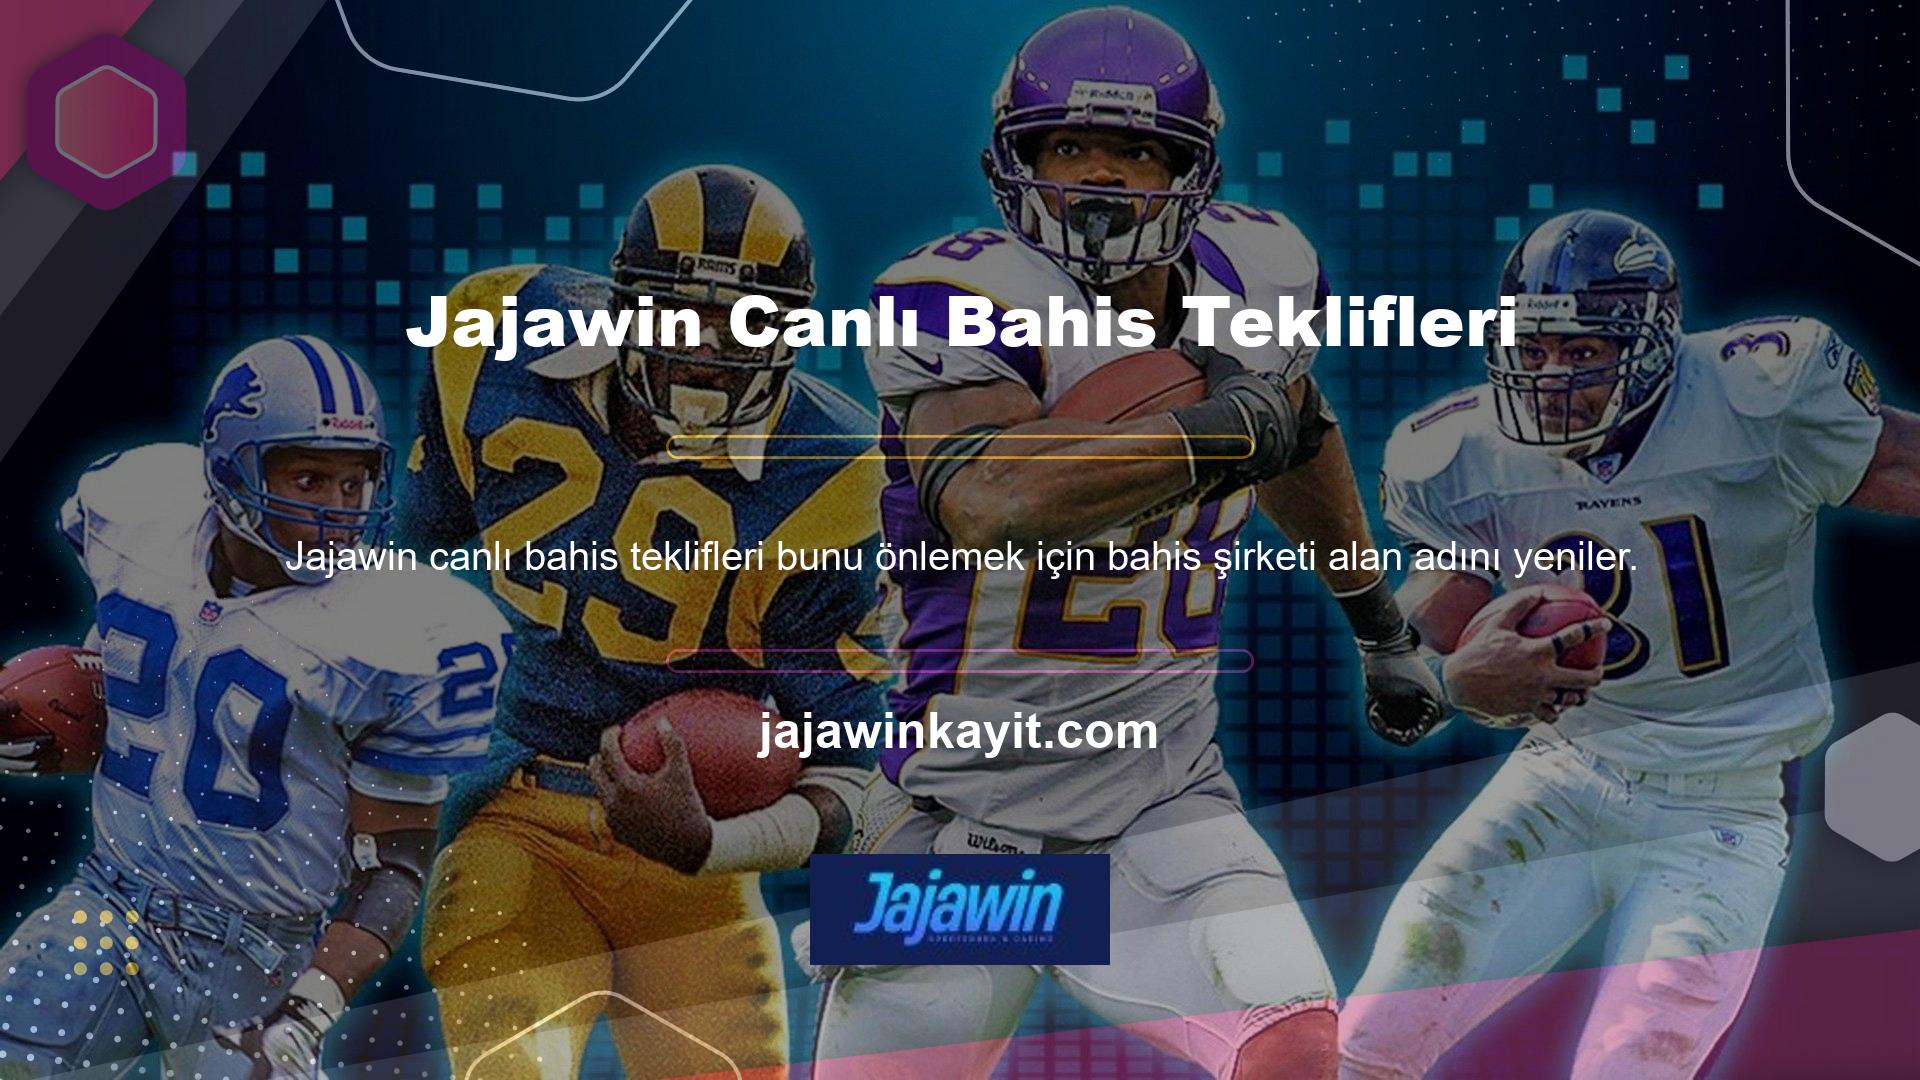 Jajawin Gaming ayrıca üyelerin cezalandırılmaması için düzenli bir alan adı yenileme sürecine sahiptir